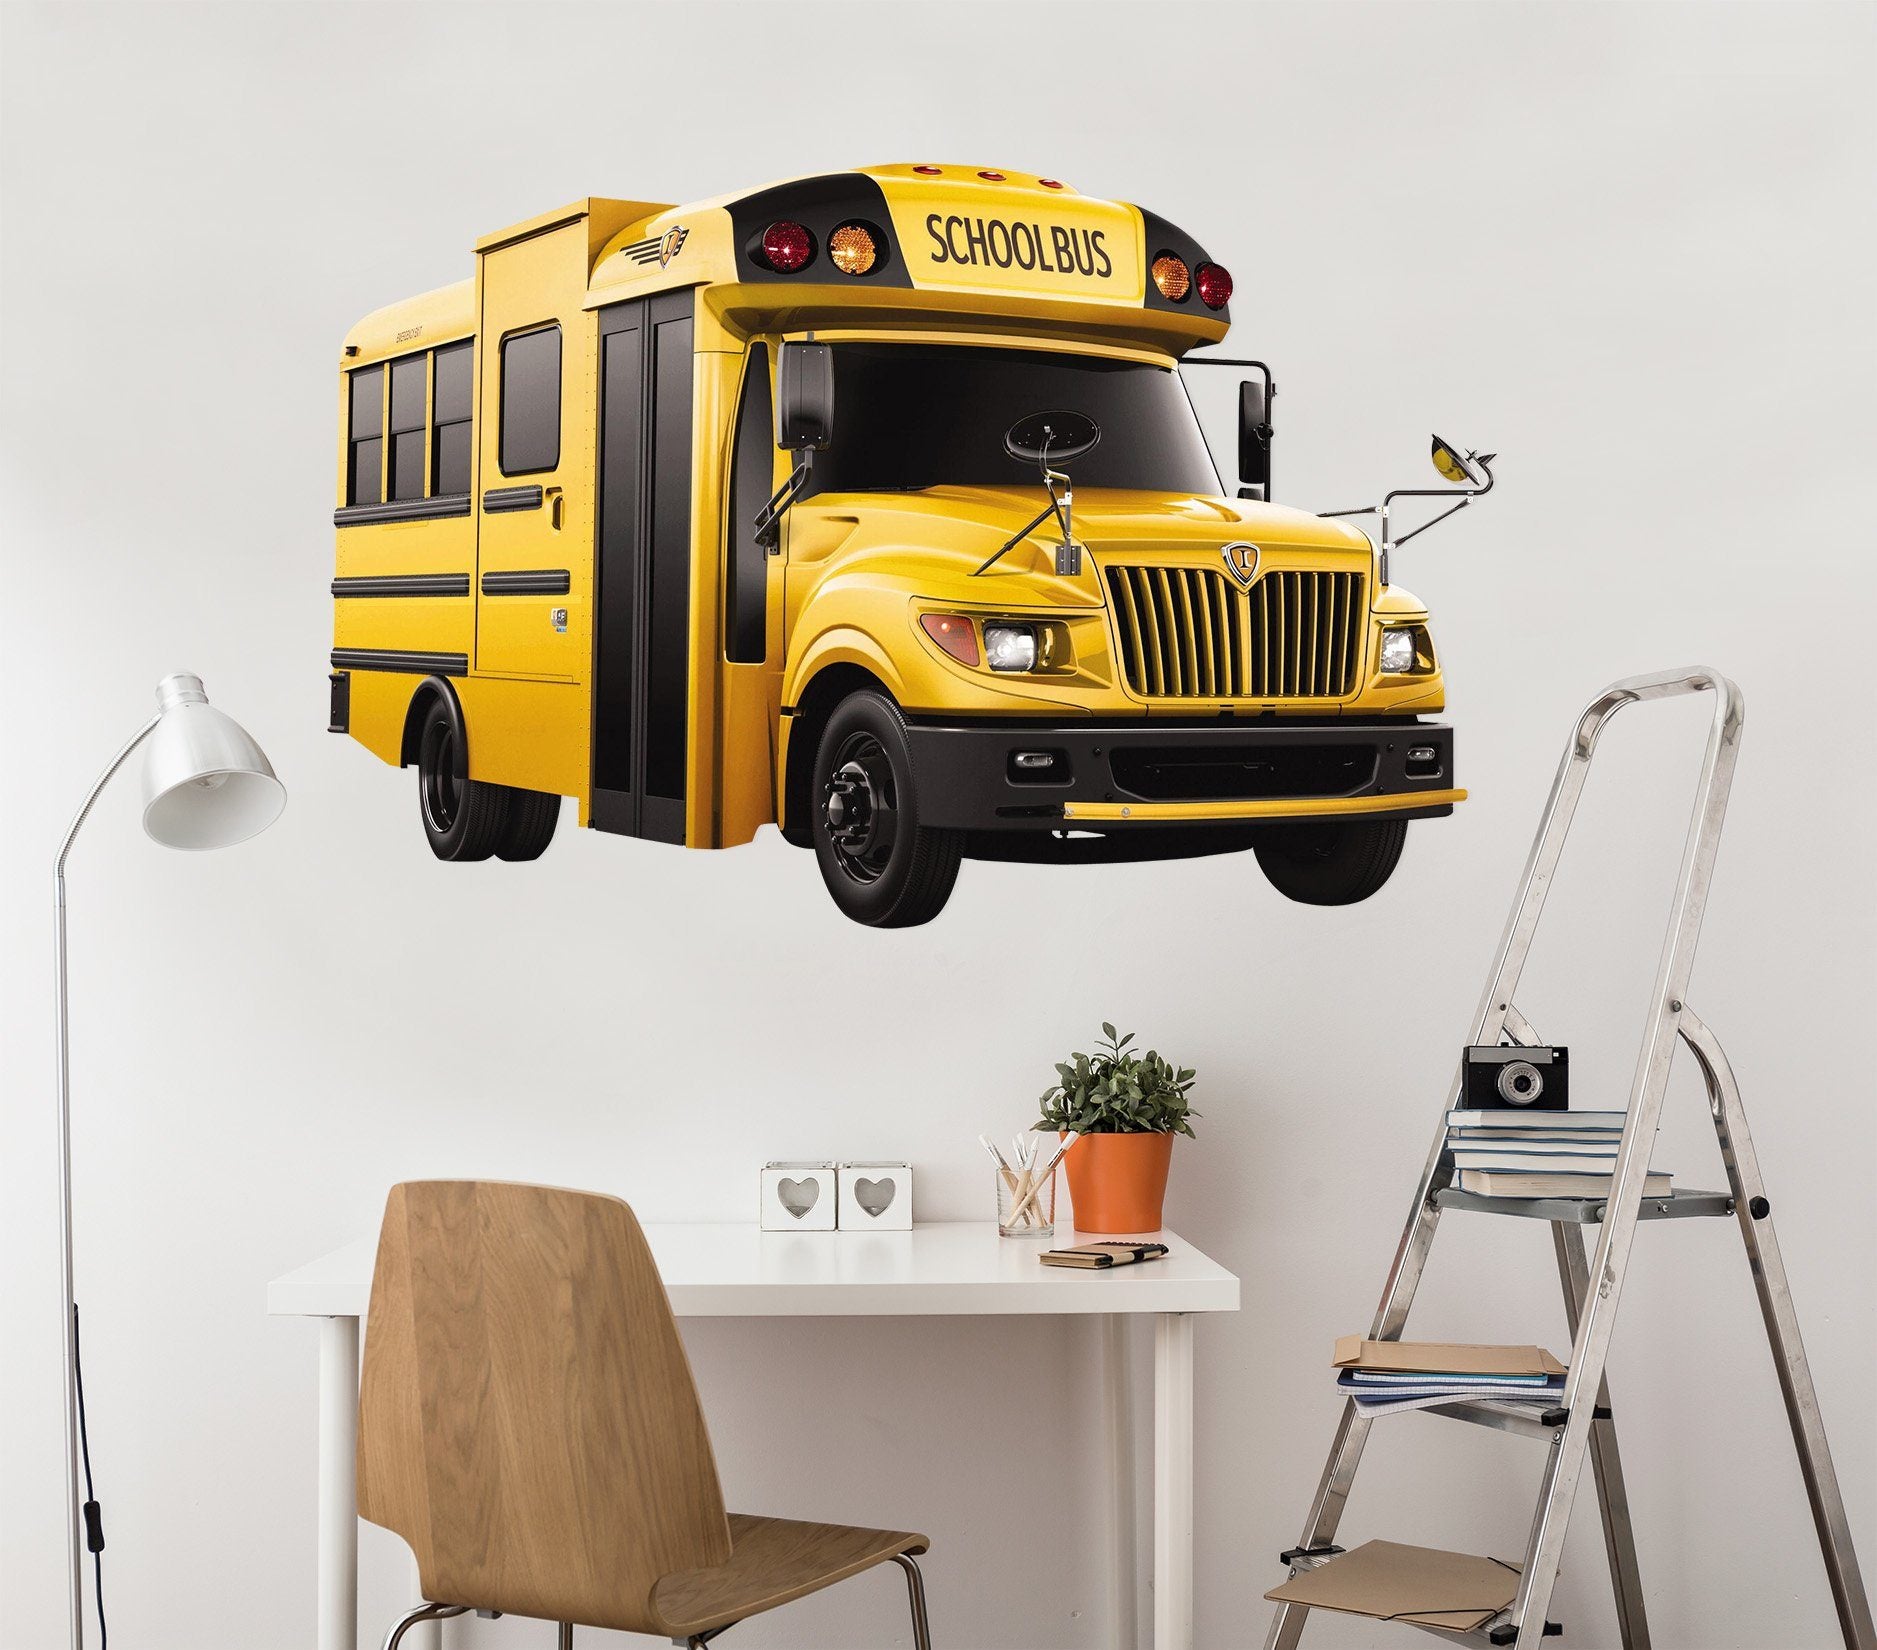 3D School Bus 0007 Vehicles Wallpaper AJ Wallpaper 